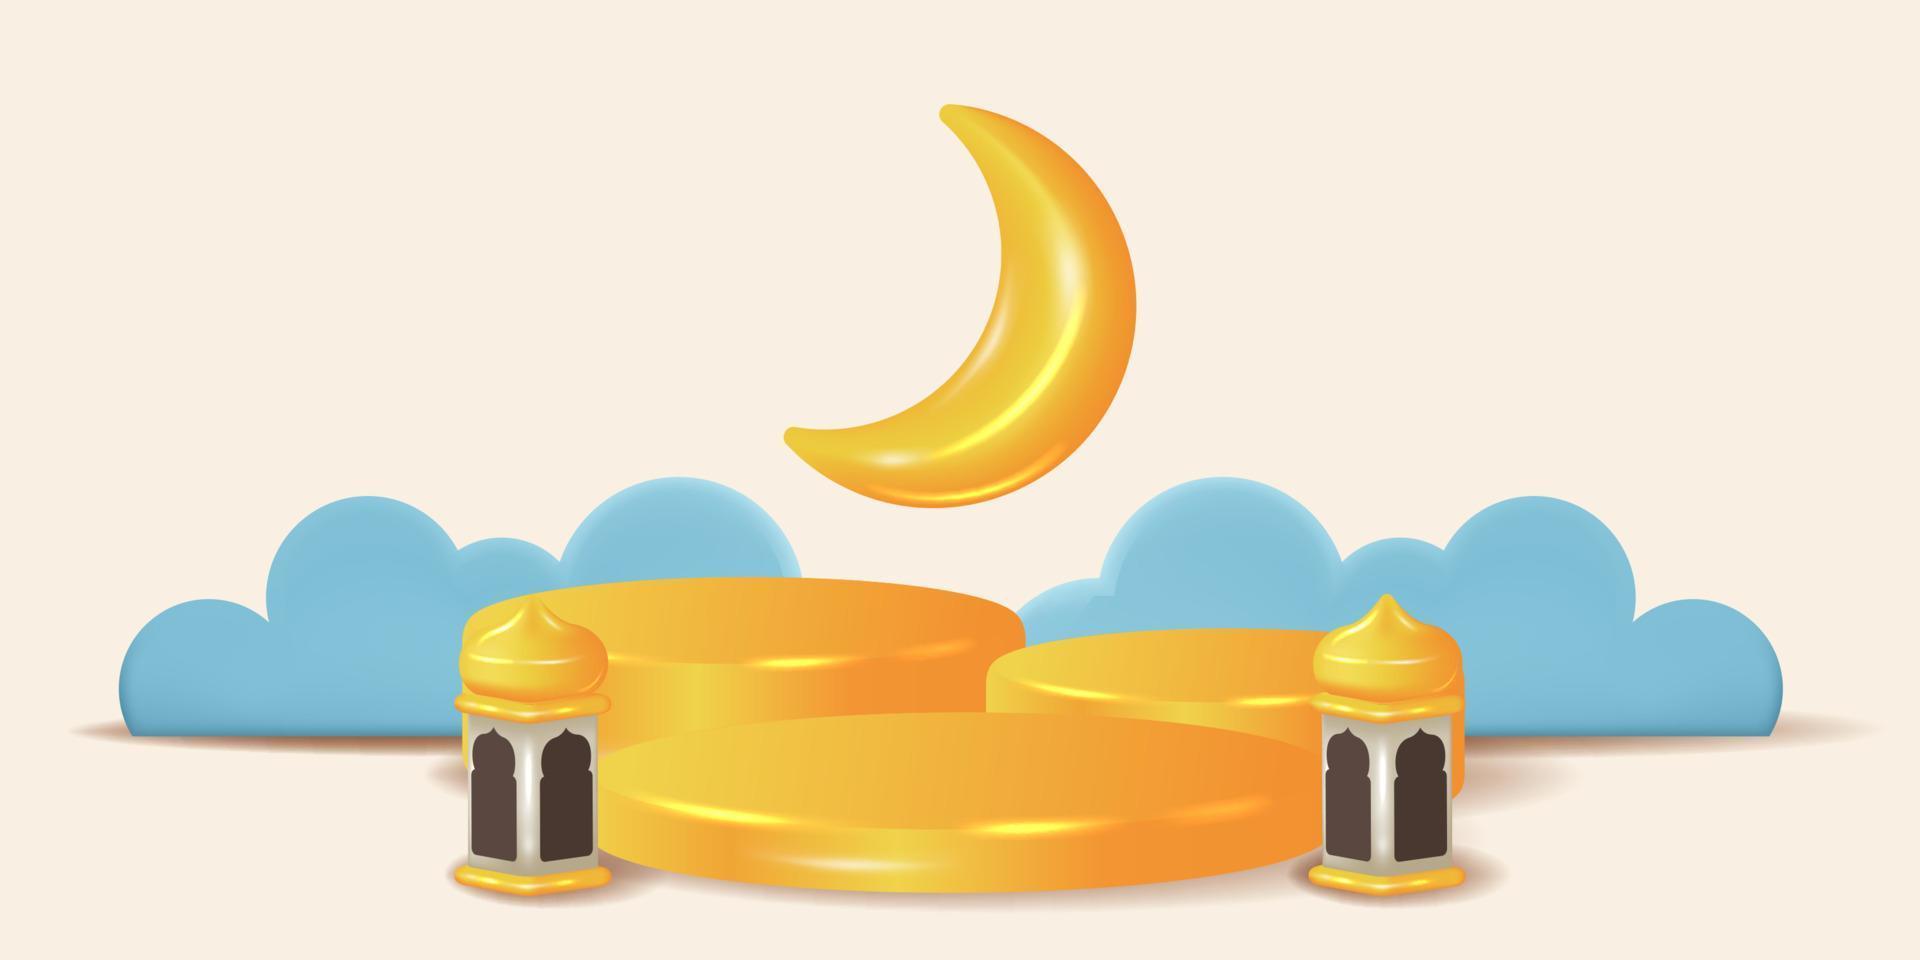 Mezzaluna lunare 3d carina con decorazione del palco del podio cilindro giallo lucido per la festa dell'evento islamico ramadan vettore